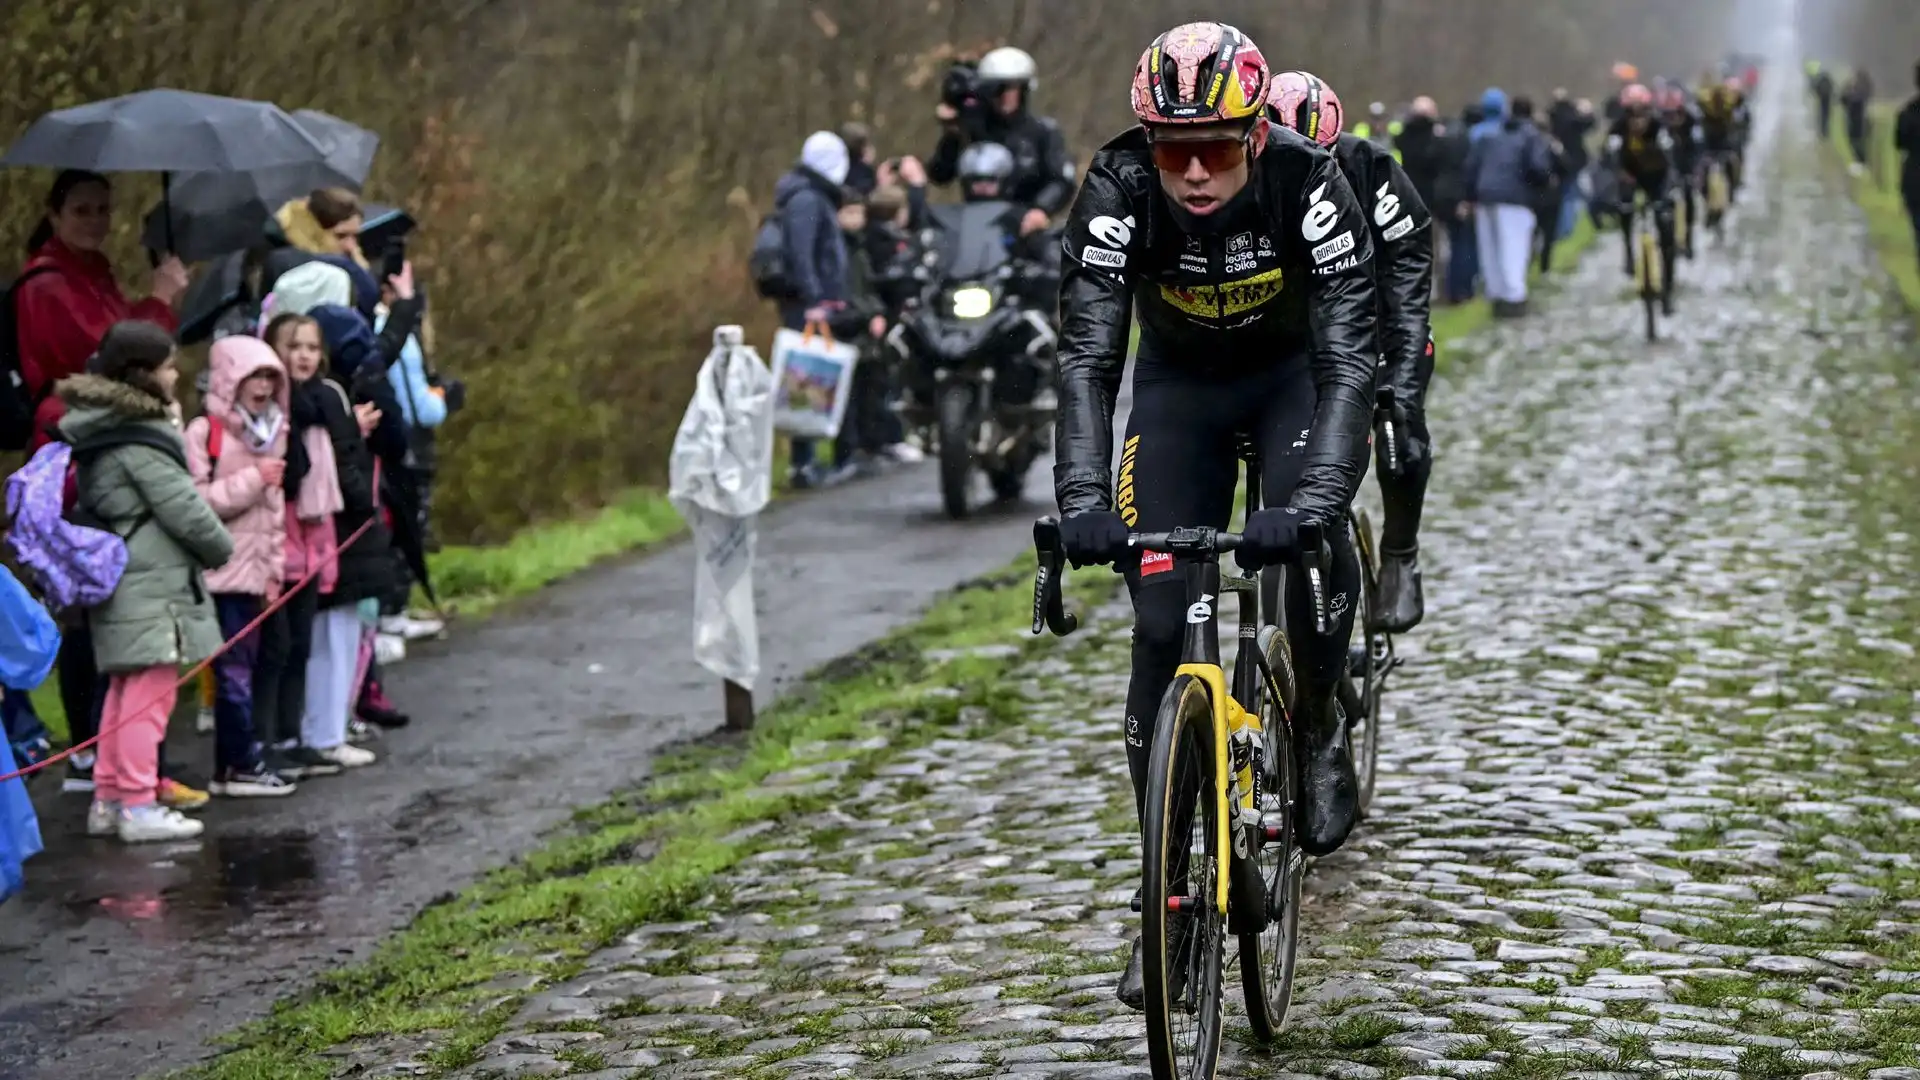 A vincere l'edizione 2022 della Parigi-Roubaix è stato l'olandese Dylan van Baarle